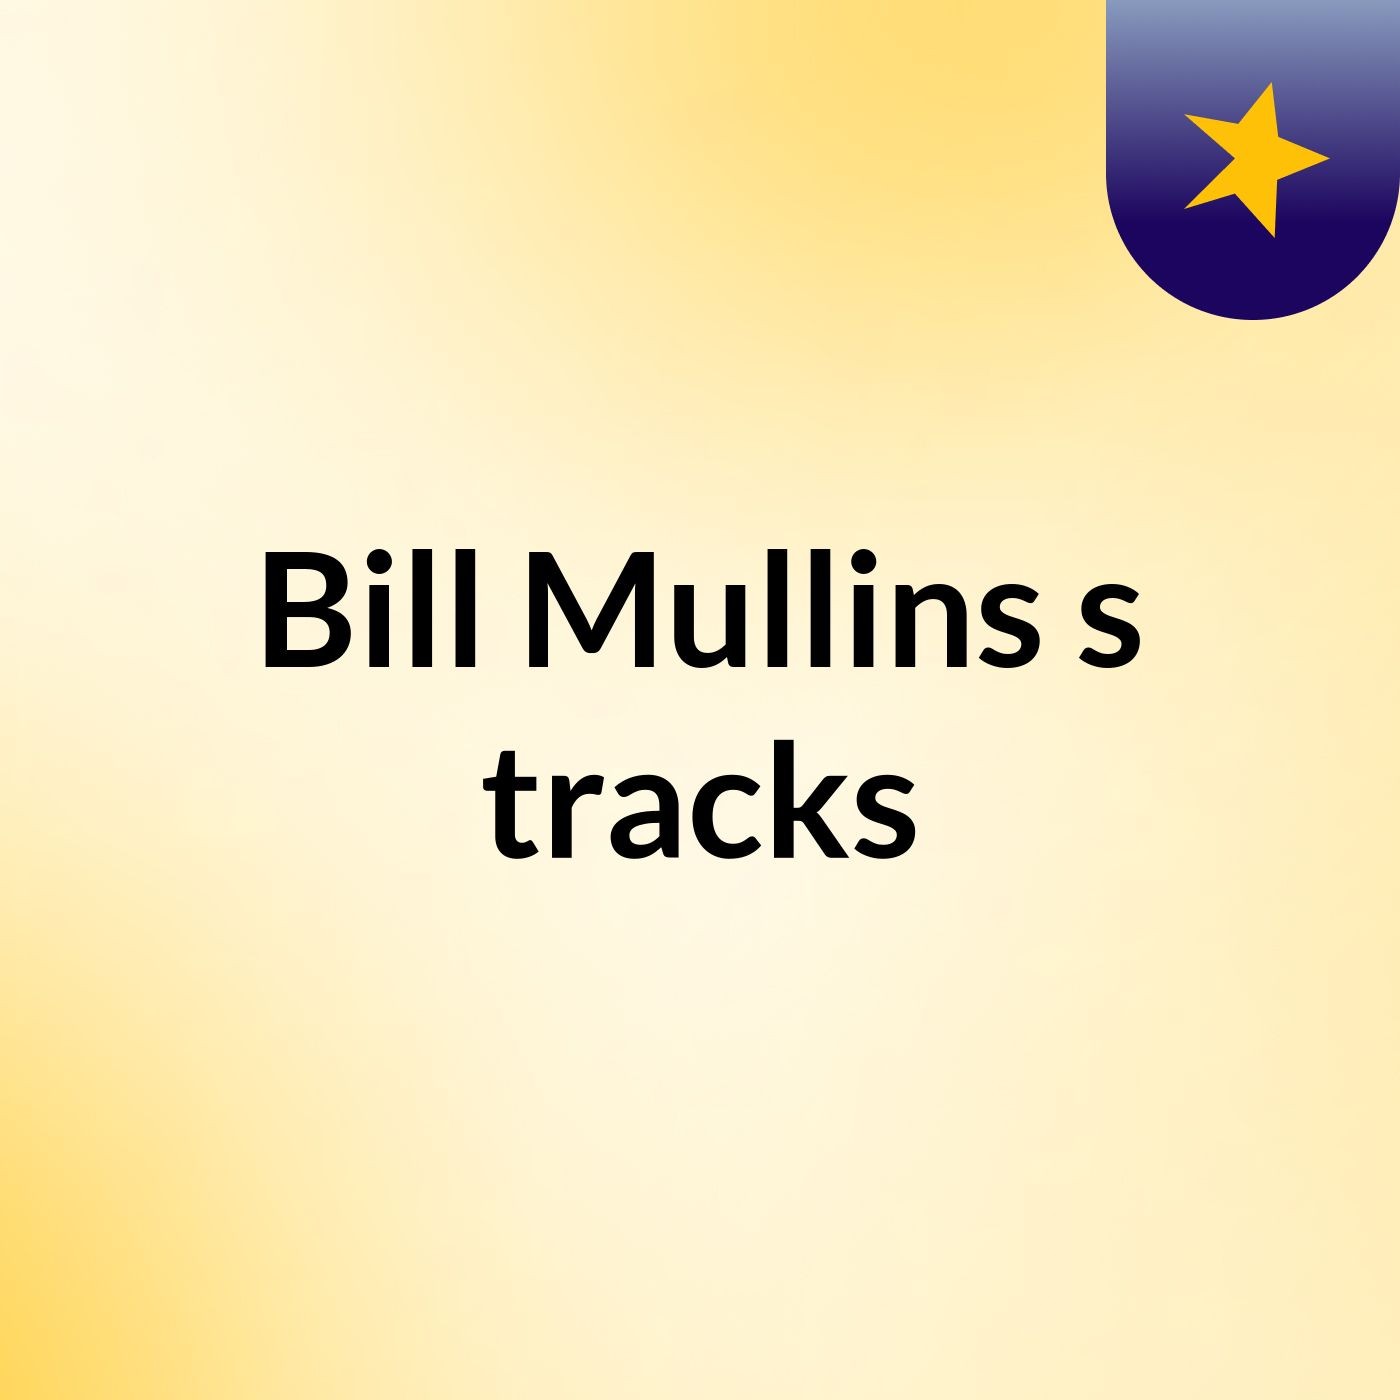 Bill Mullins's tracks